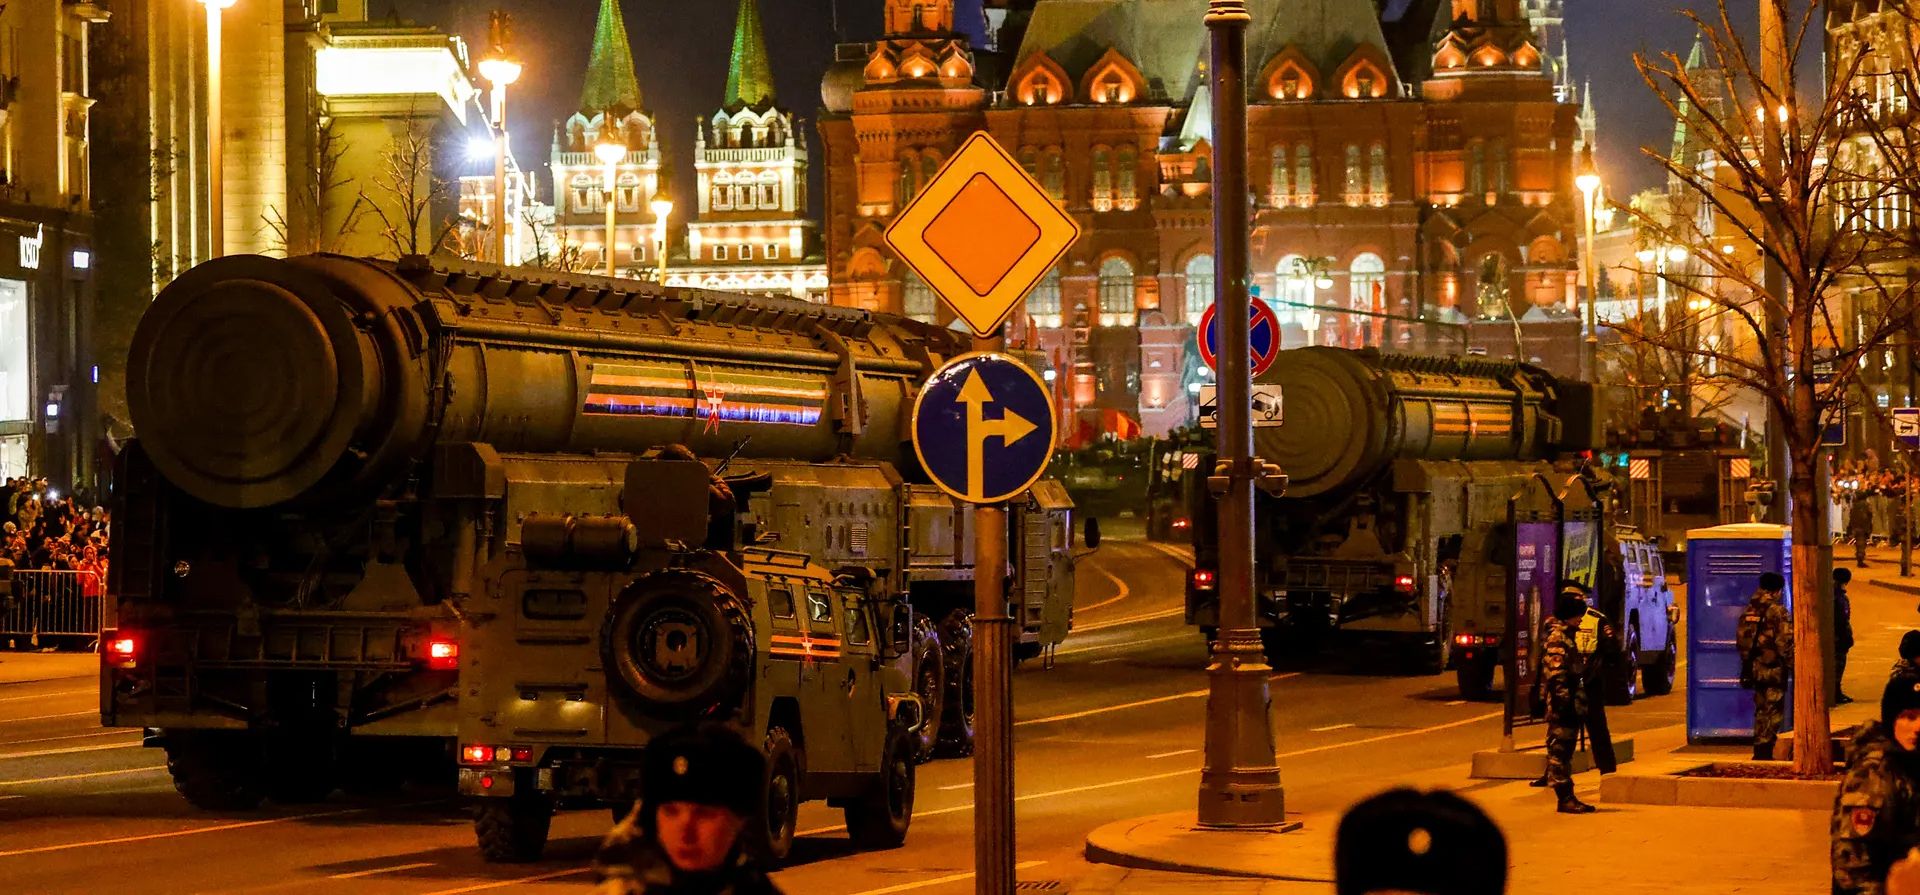 Vehículos militares transitan la calle Tverskaya durante un ensayo para el desfile del Día de la Victoria que marca el aniversario de la victoria sobre la Alemania nazi en la Segunda Guerra Mundial. Fotografía: Agencia Anadolu/Getty Images